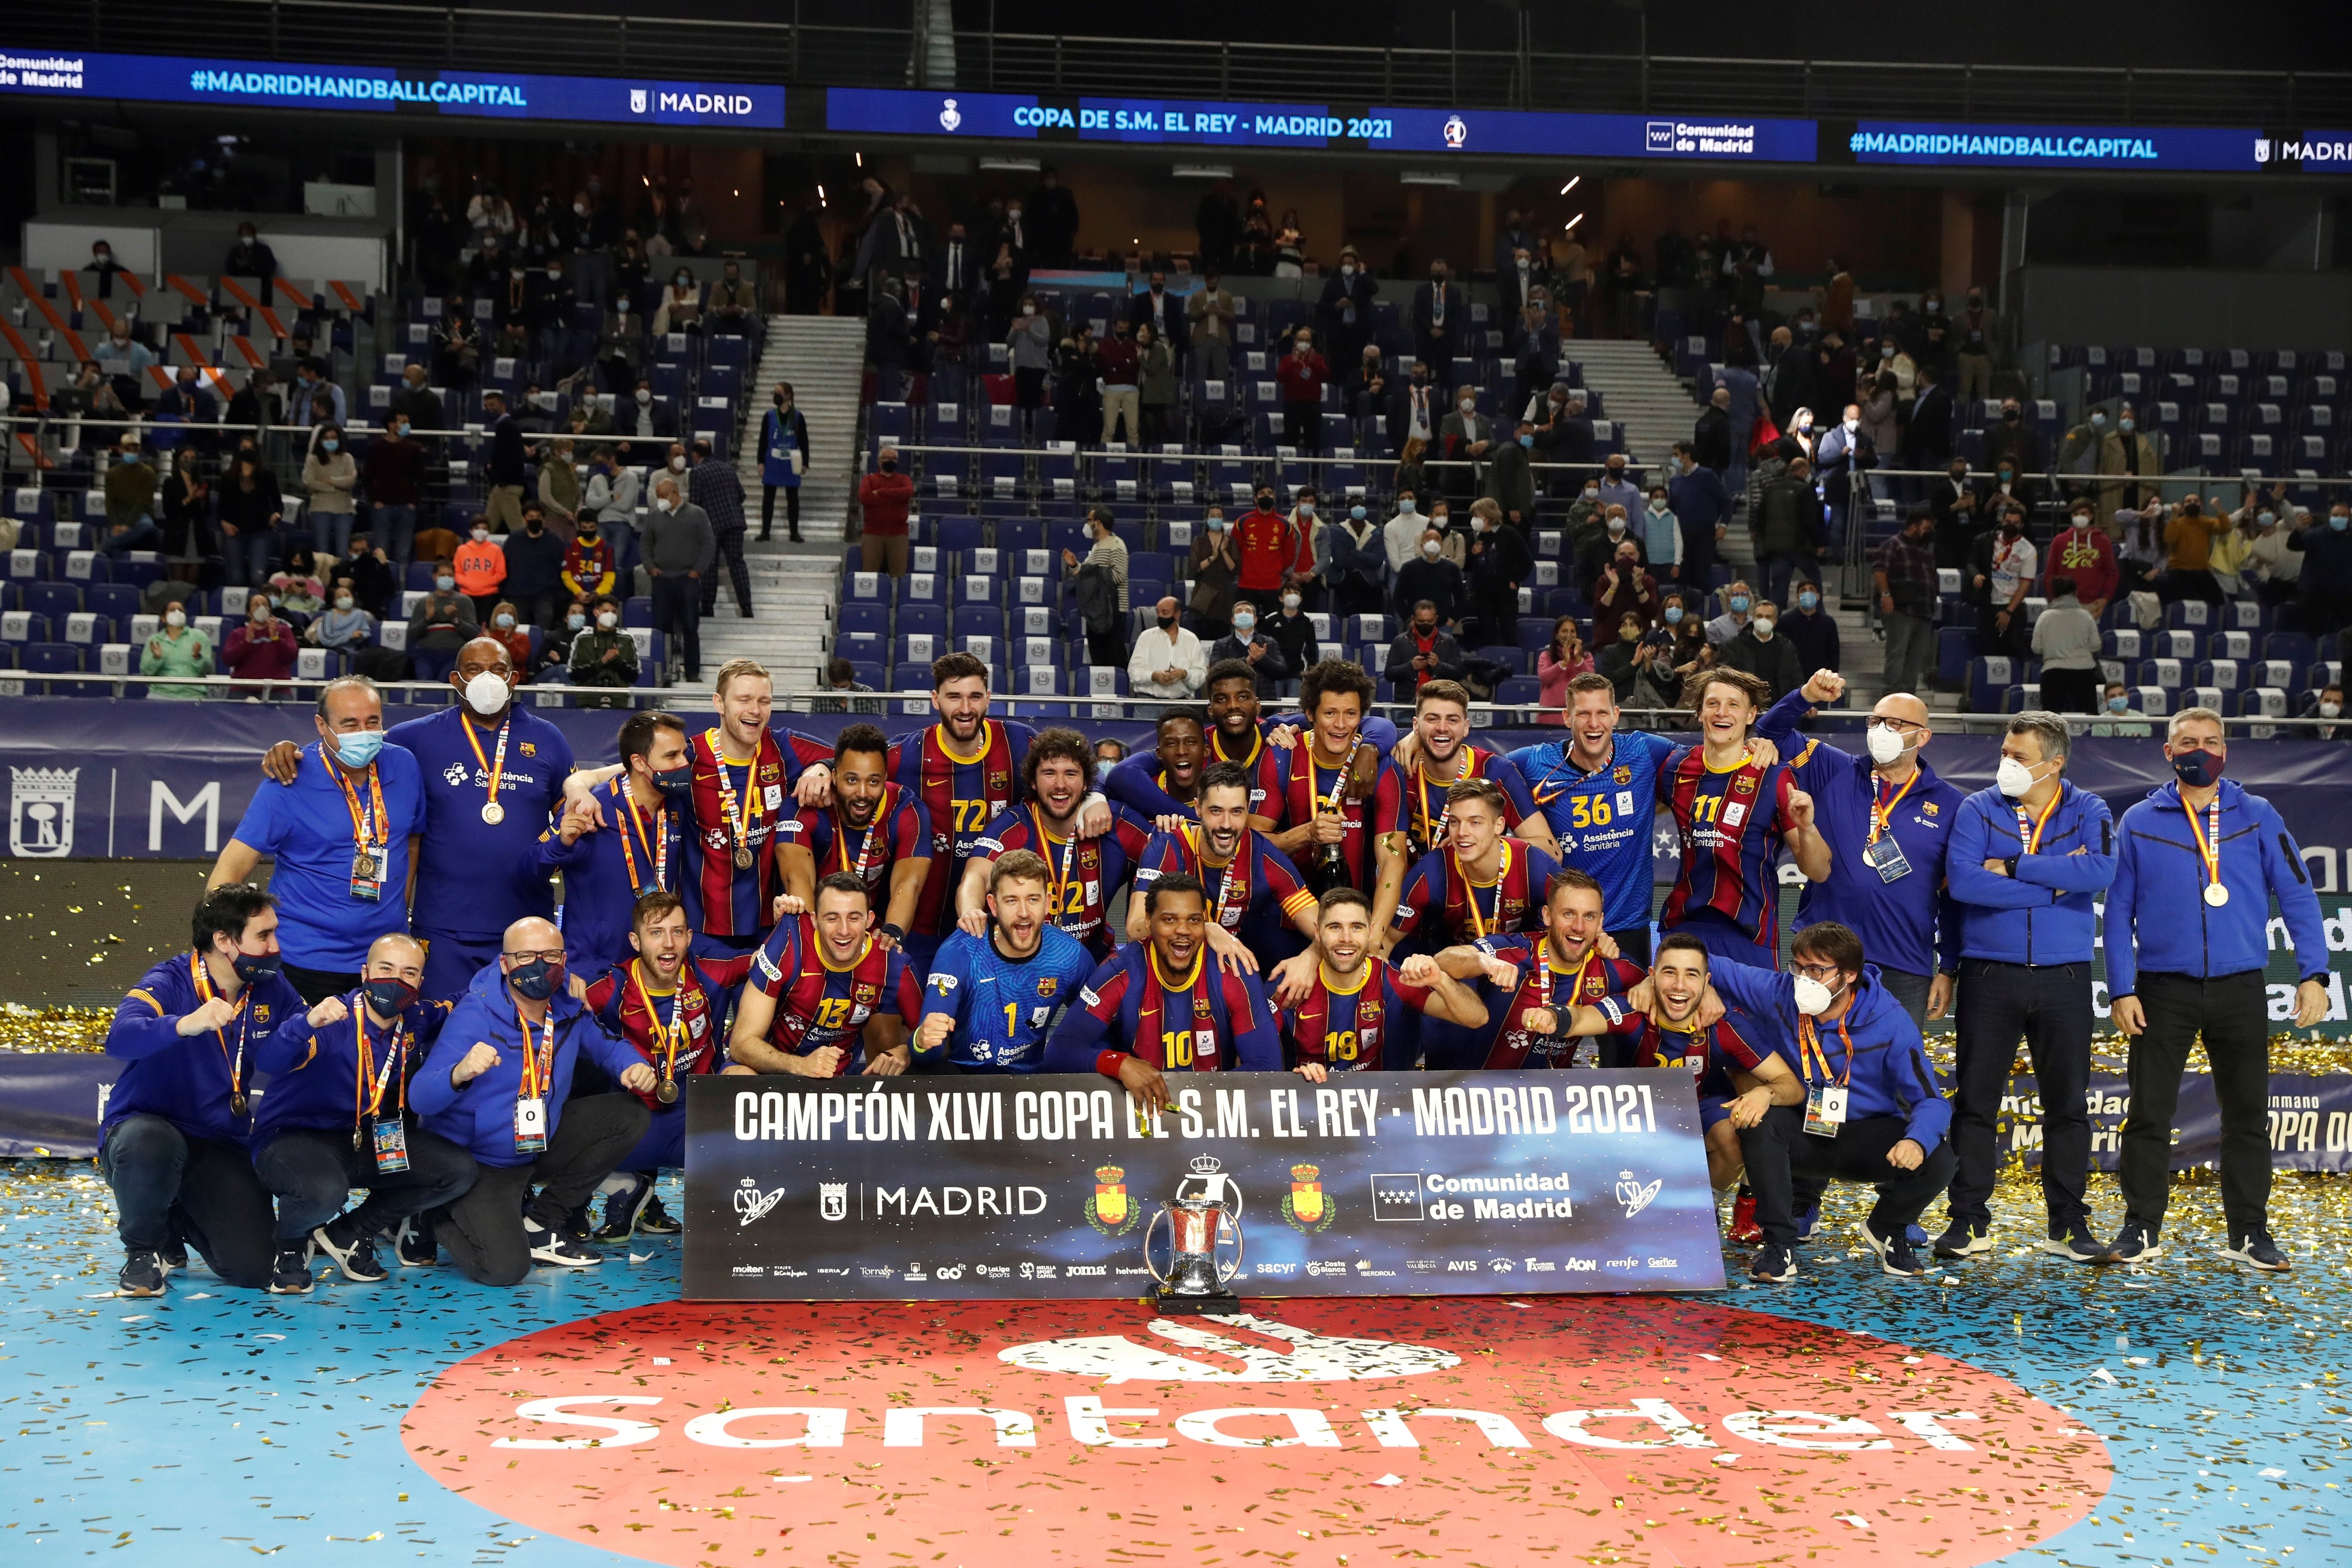 El Barça d'handbol s'imposa a l'Ademar i guanya la 25a Copa del Rei (27-35)